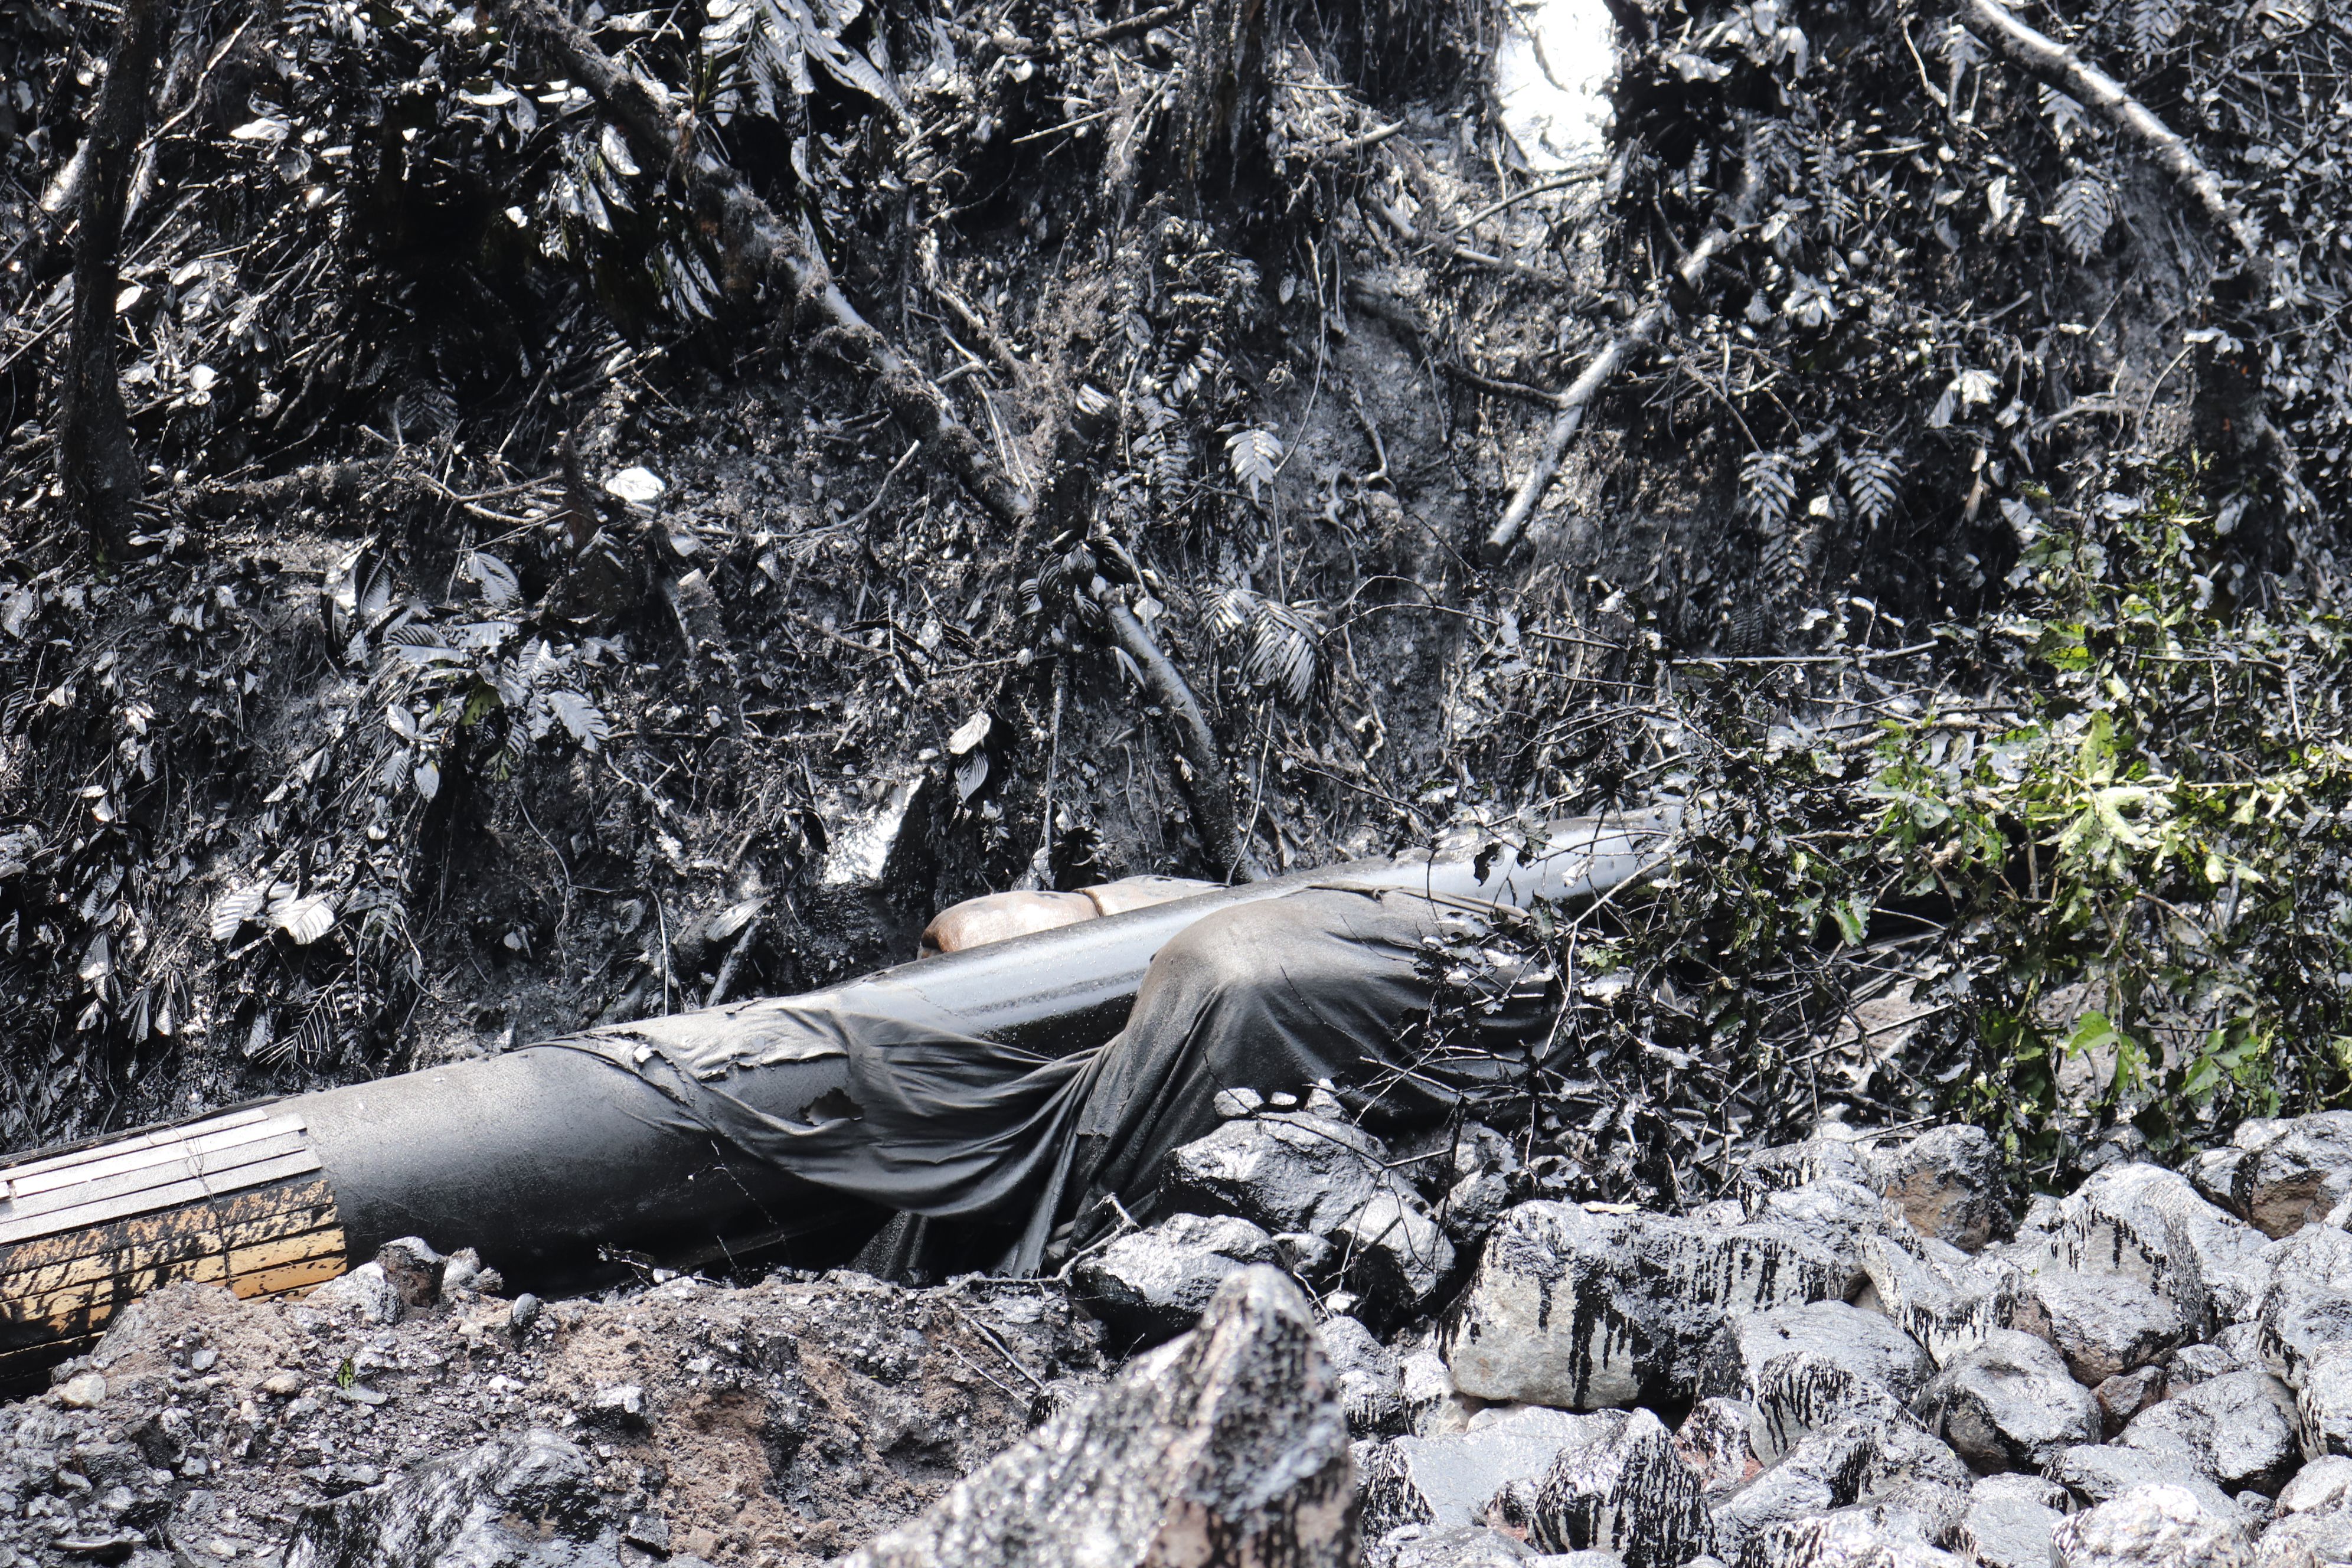 La rotura del Oleoducto de Crudos Pesados en la Amazonía ecuatoriana provocó el derrame de crudo que ha afectado a más de 21.000 m2 incluyendo la zona del Parque Nacional Cayambe Coco. (Foto: Ministerio de Ambiente)